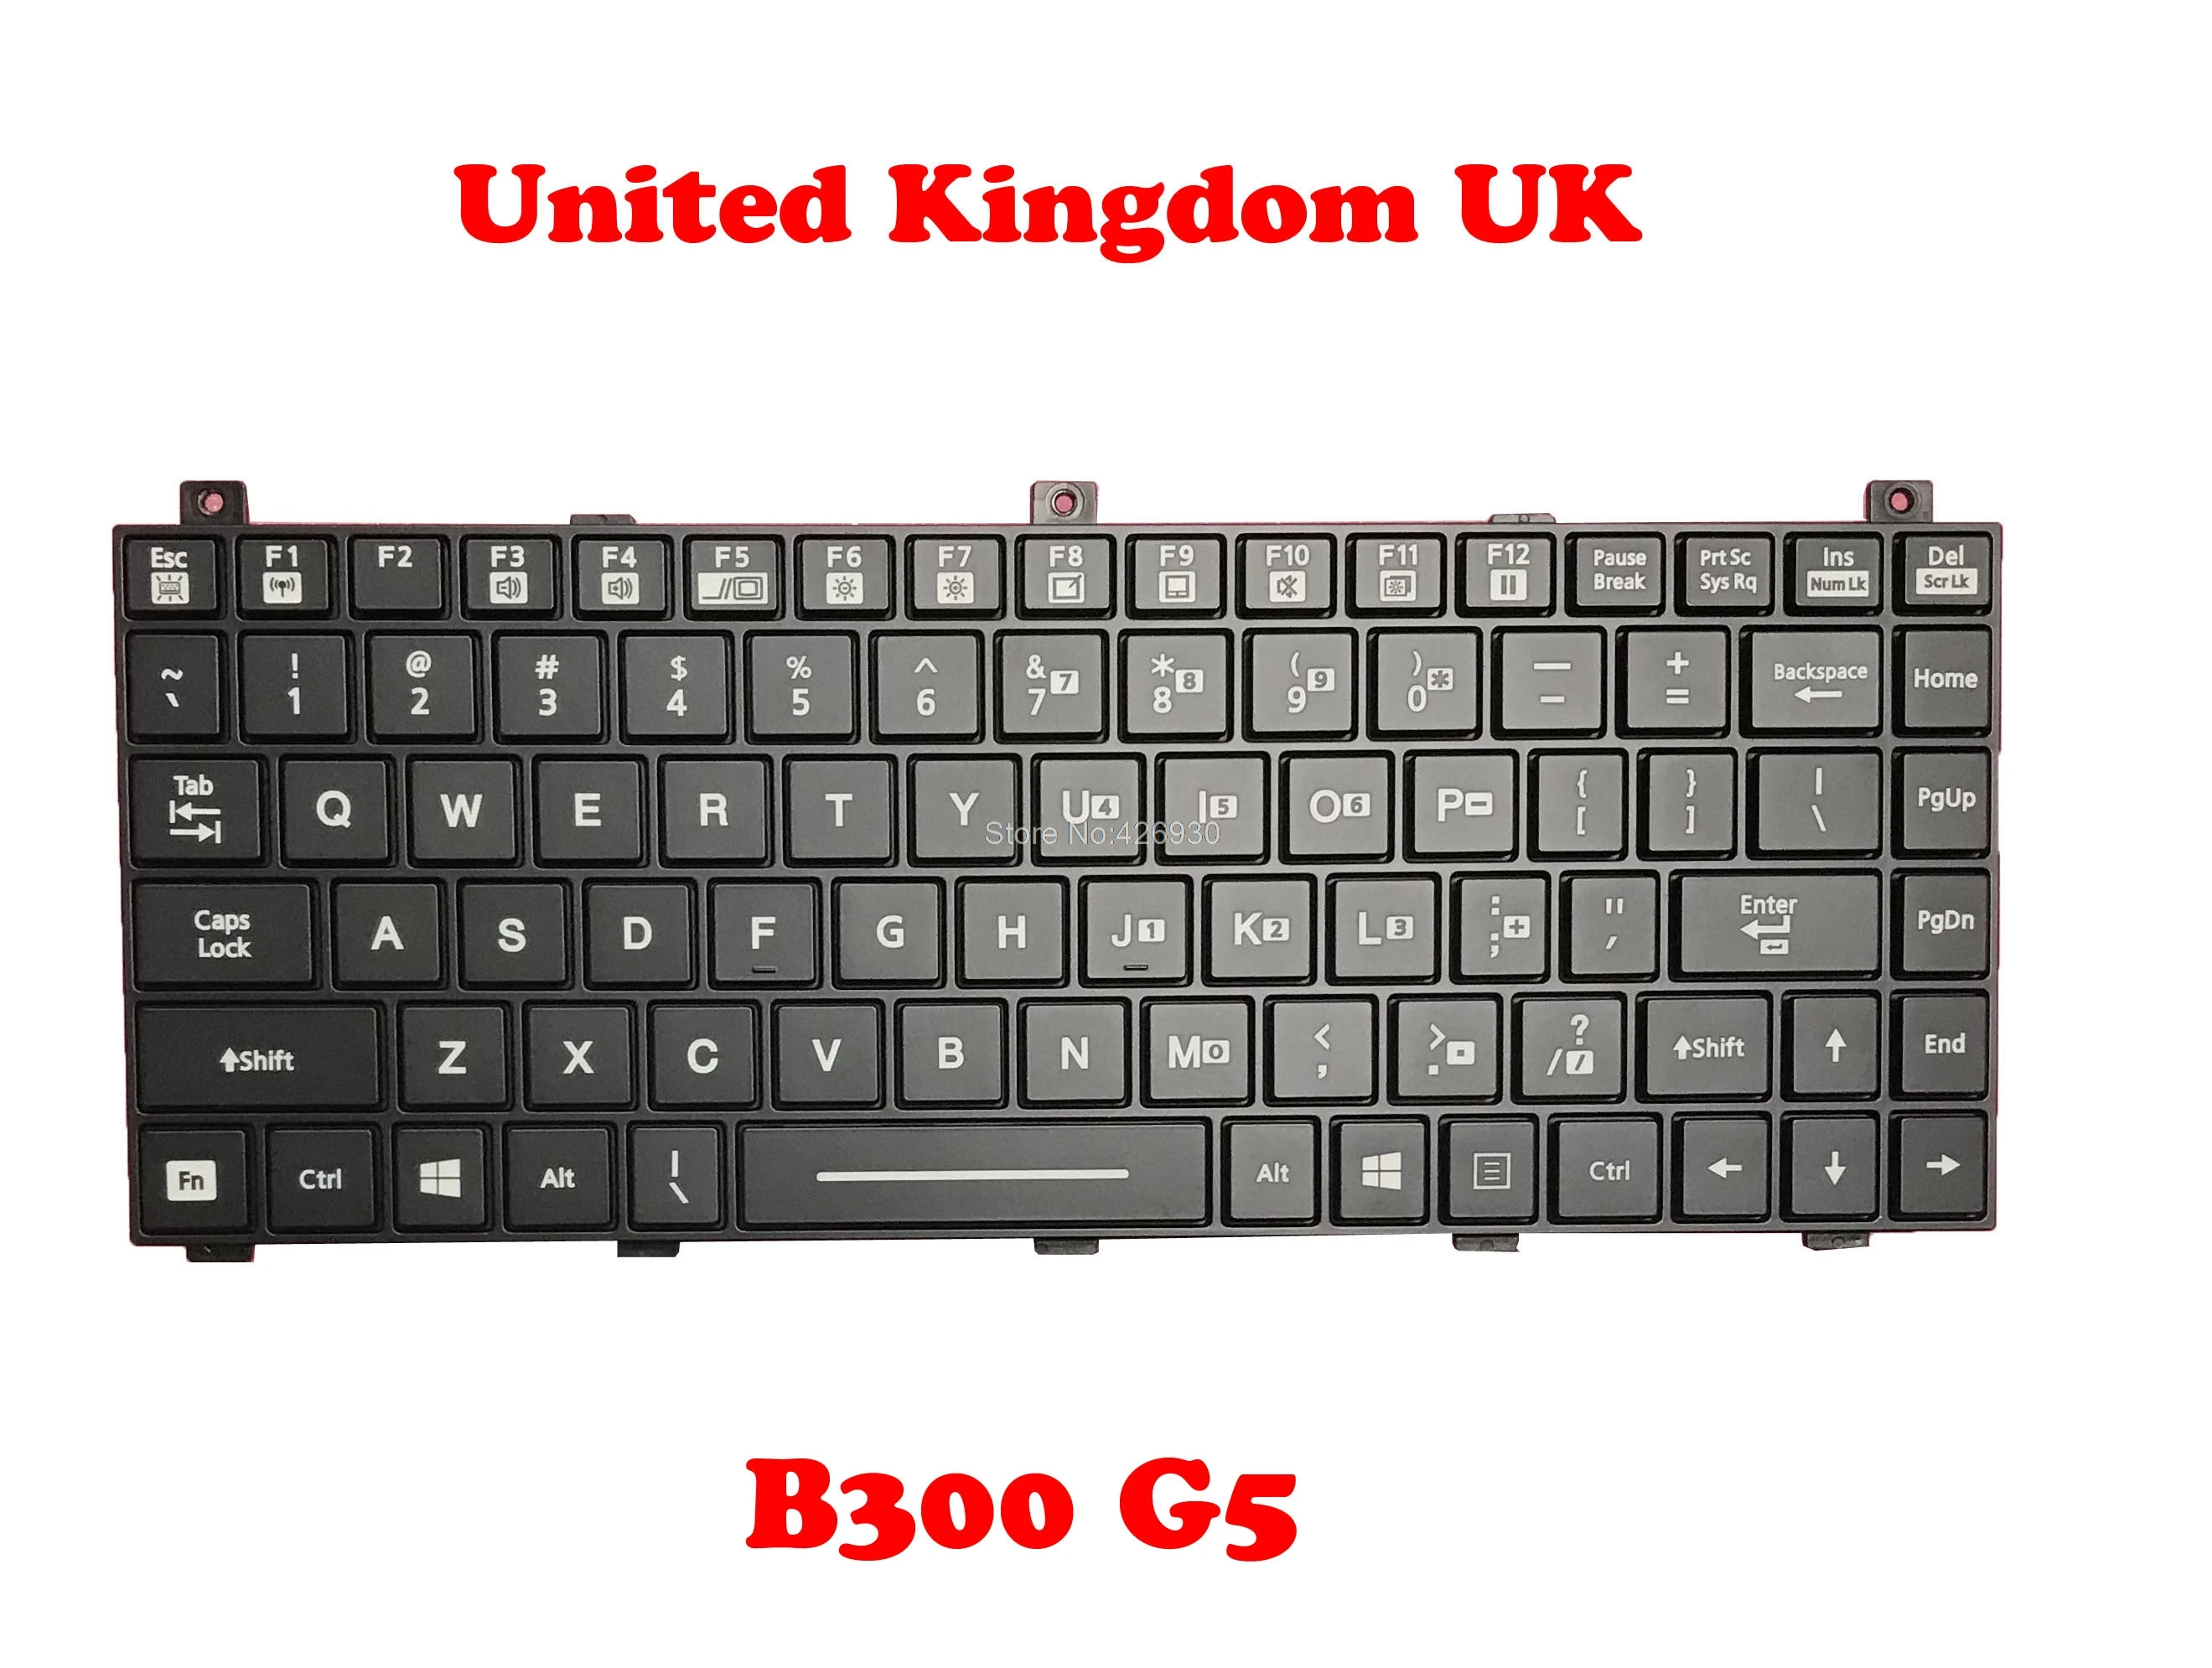 

UK FR US Backlit Keyboard For Getac V110 English French B300 G5 United Kingdom UK